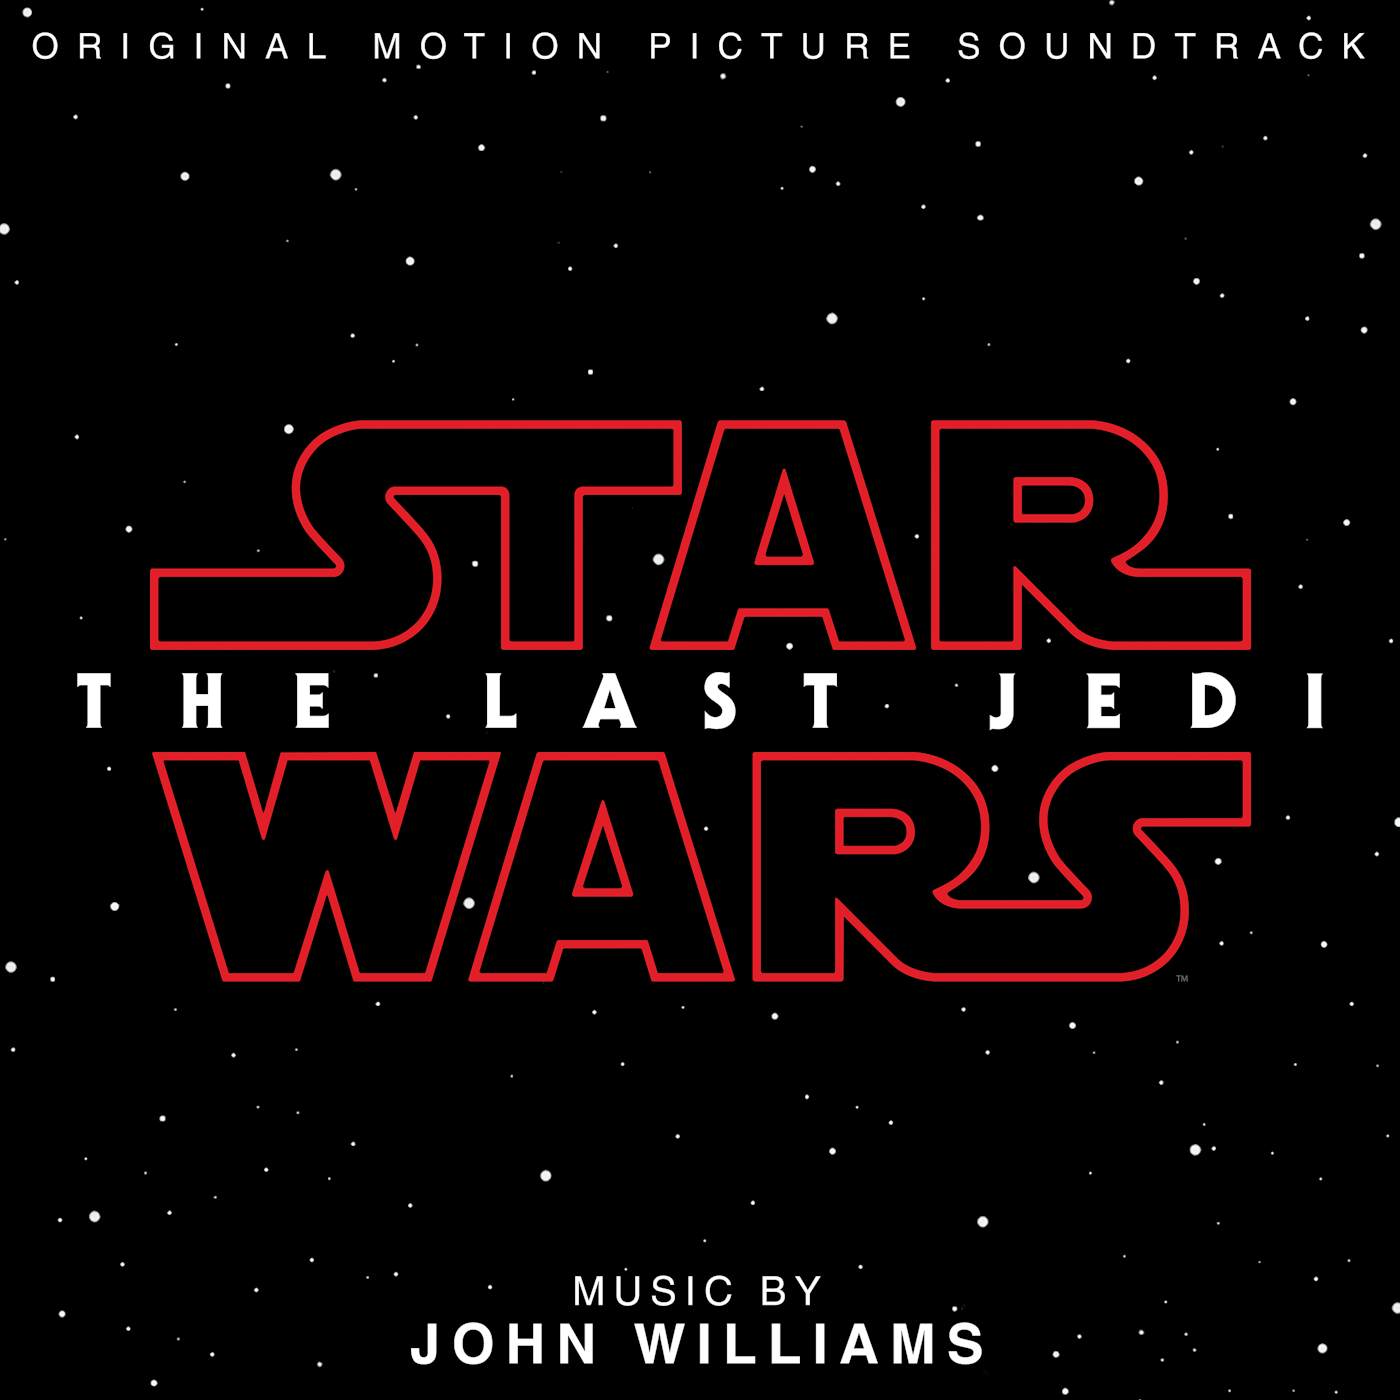 John Williams STAR WARS: THE LAST JEDI Vinyl Record